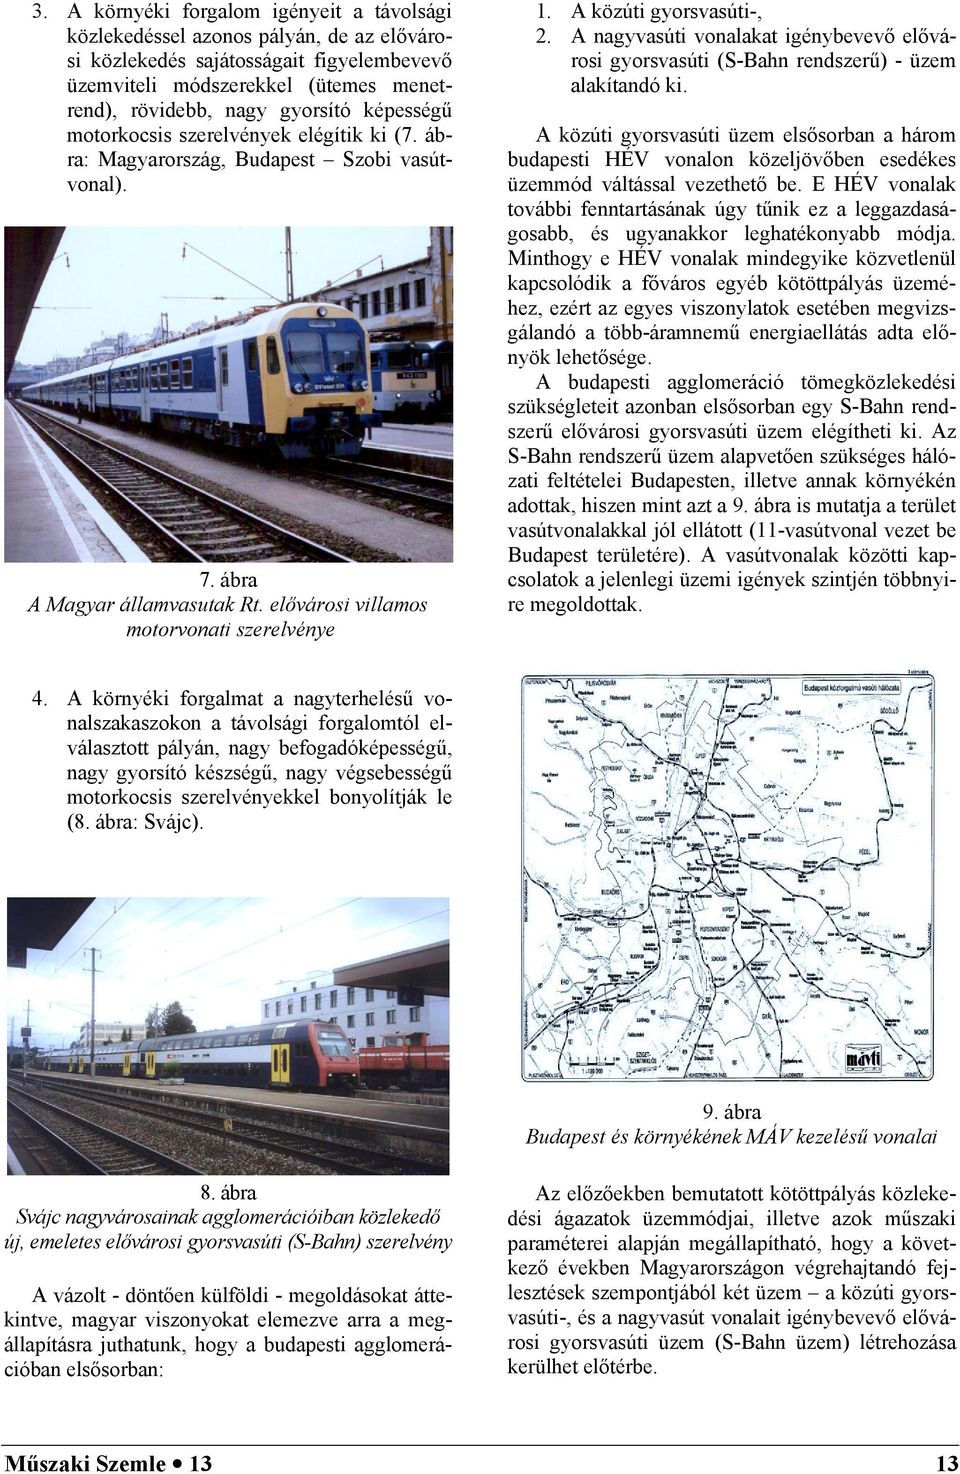 A közúti gyorsvasúti-, 2. A nagyvasúti vonalakat igénybevevő elővárosi gyorsvasúti (S-Bahn rendszerű) - üzem alakítandó ki.